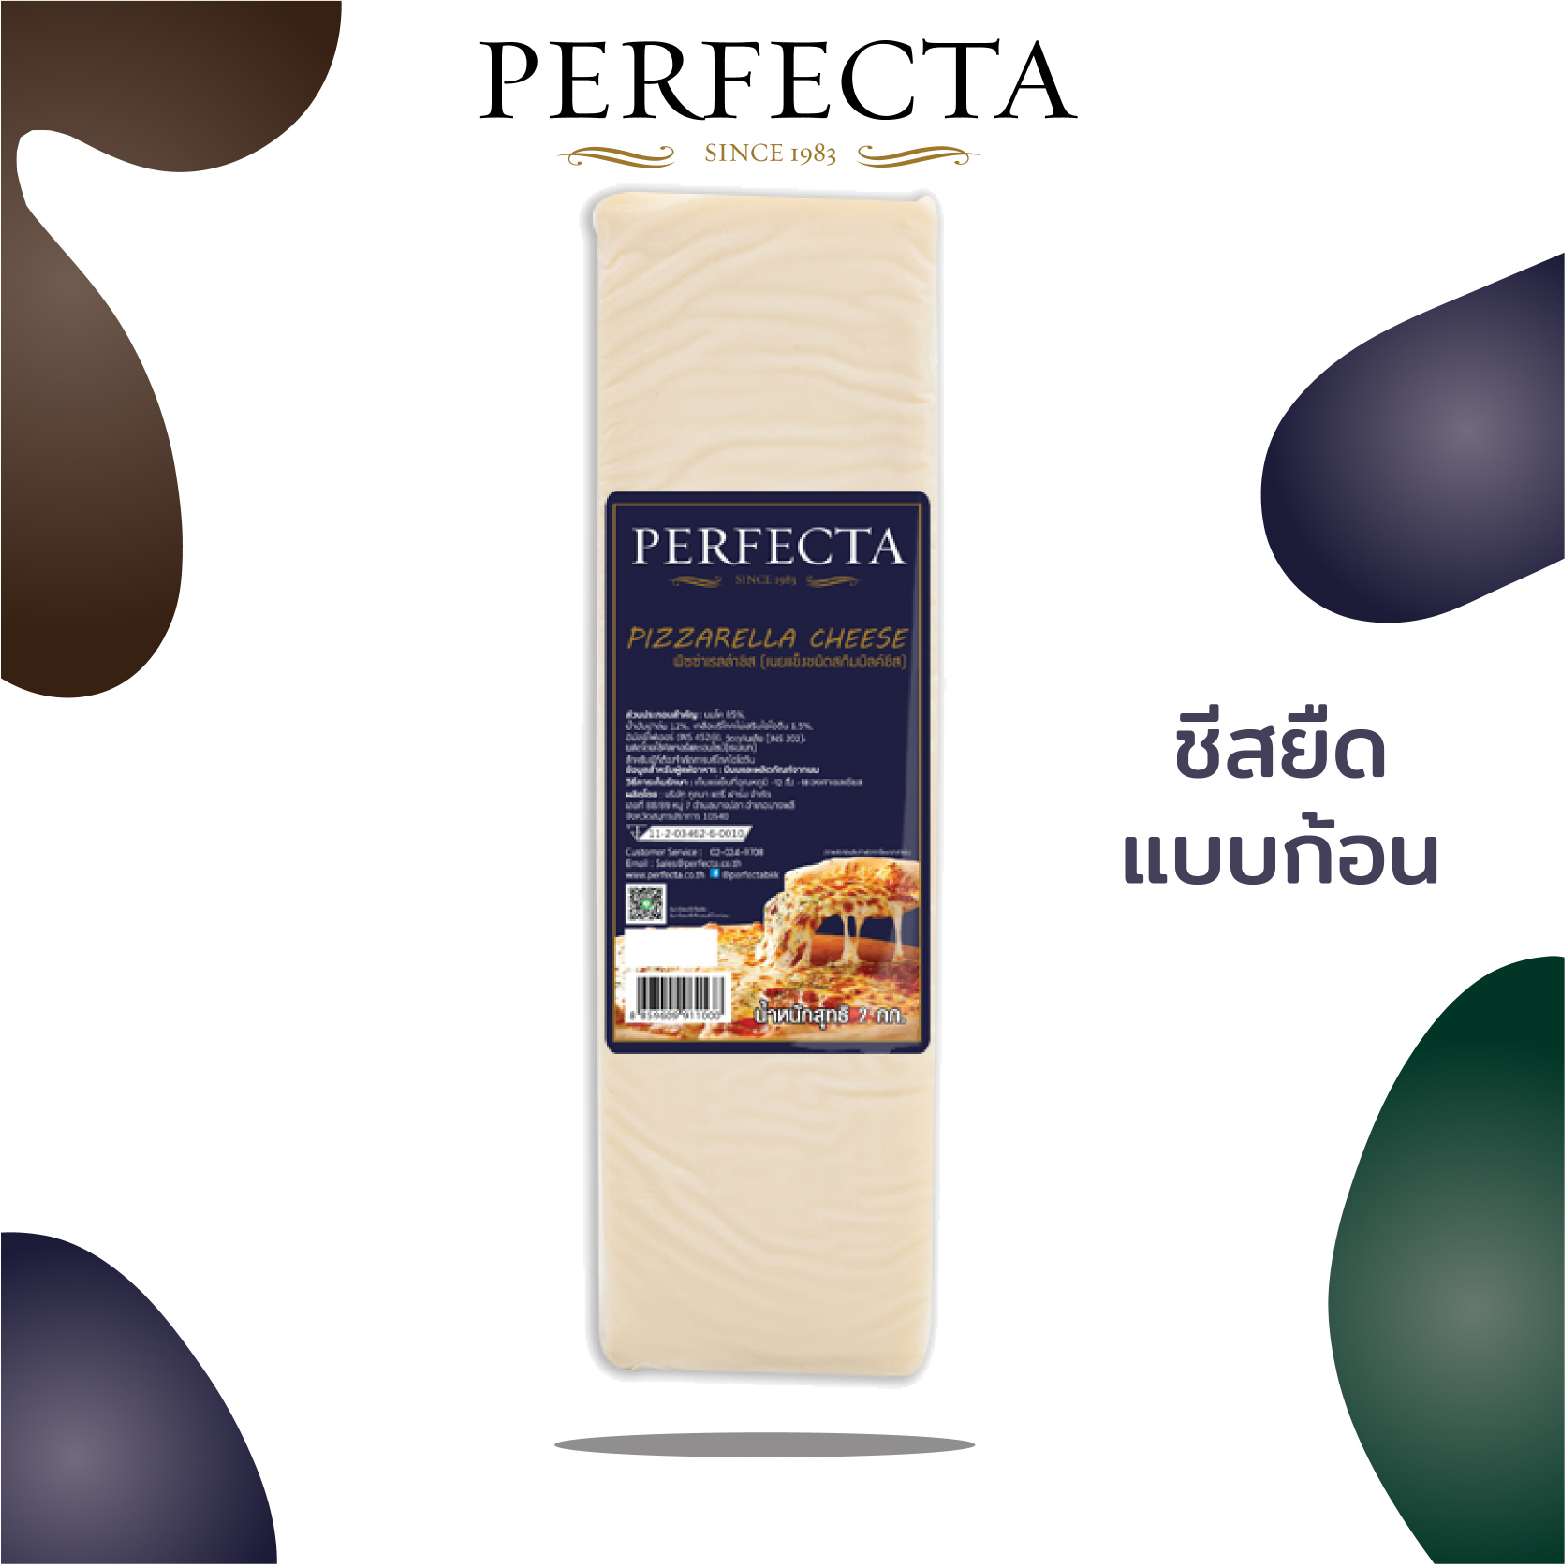 ชีสยืดแบบก้อน 2 กก.x 2 ก้อน PERFECTA Pizzarella 2 kg x 2 Blocks (4 กก.) ส่งฟรีแบบแช่เย็น